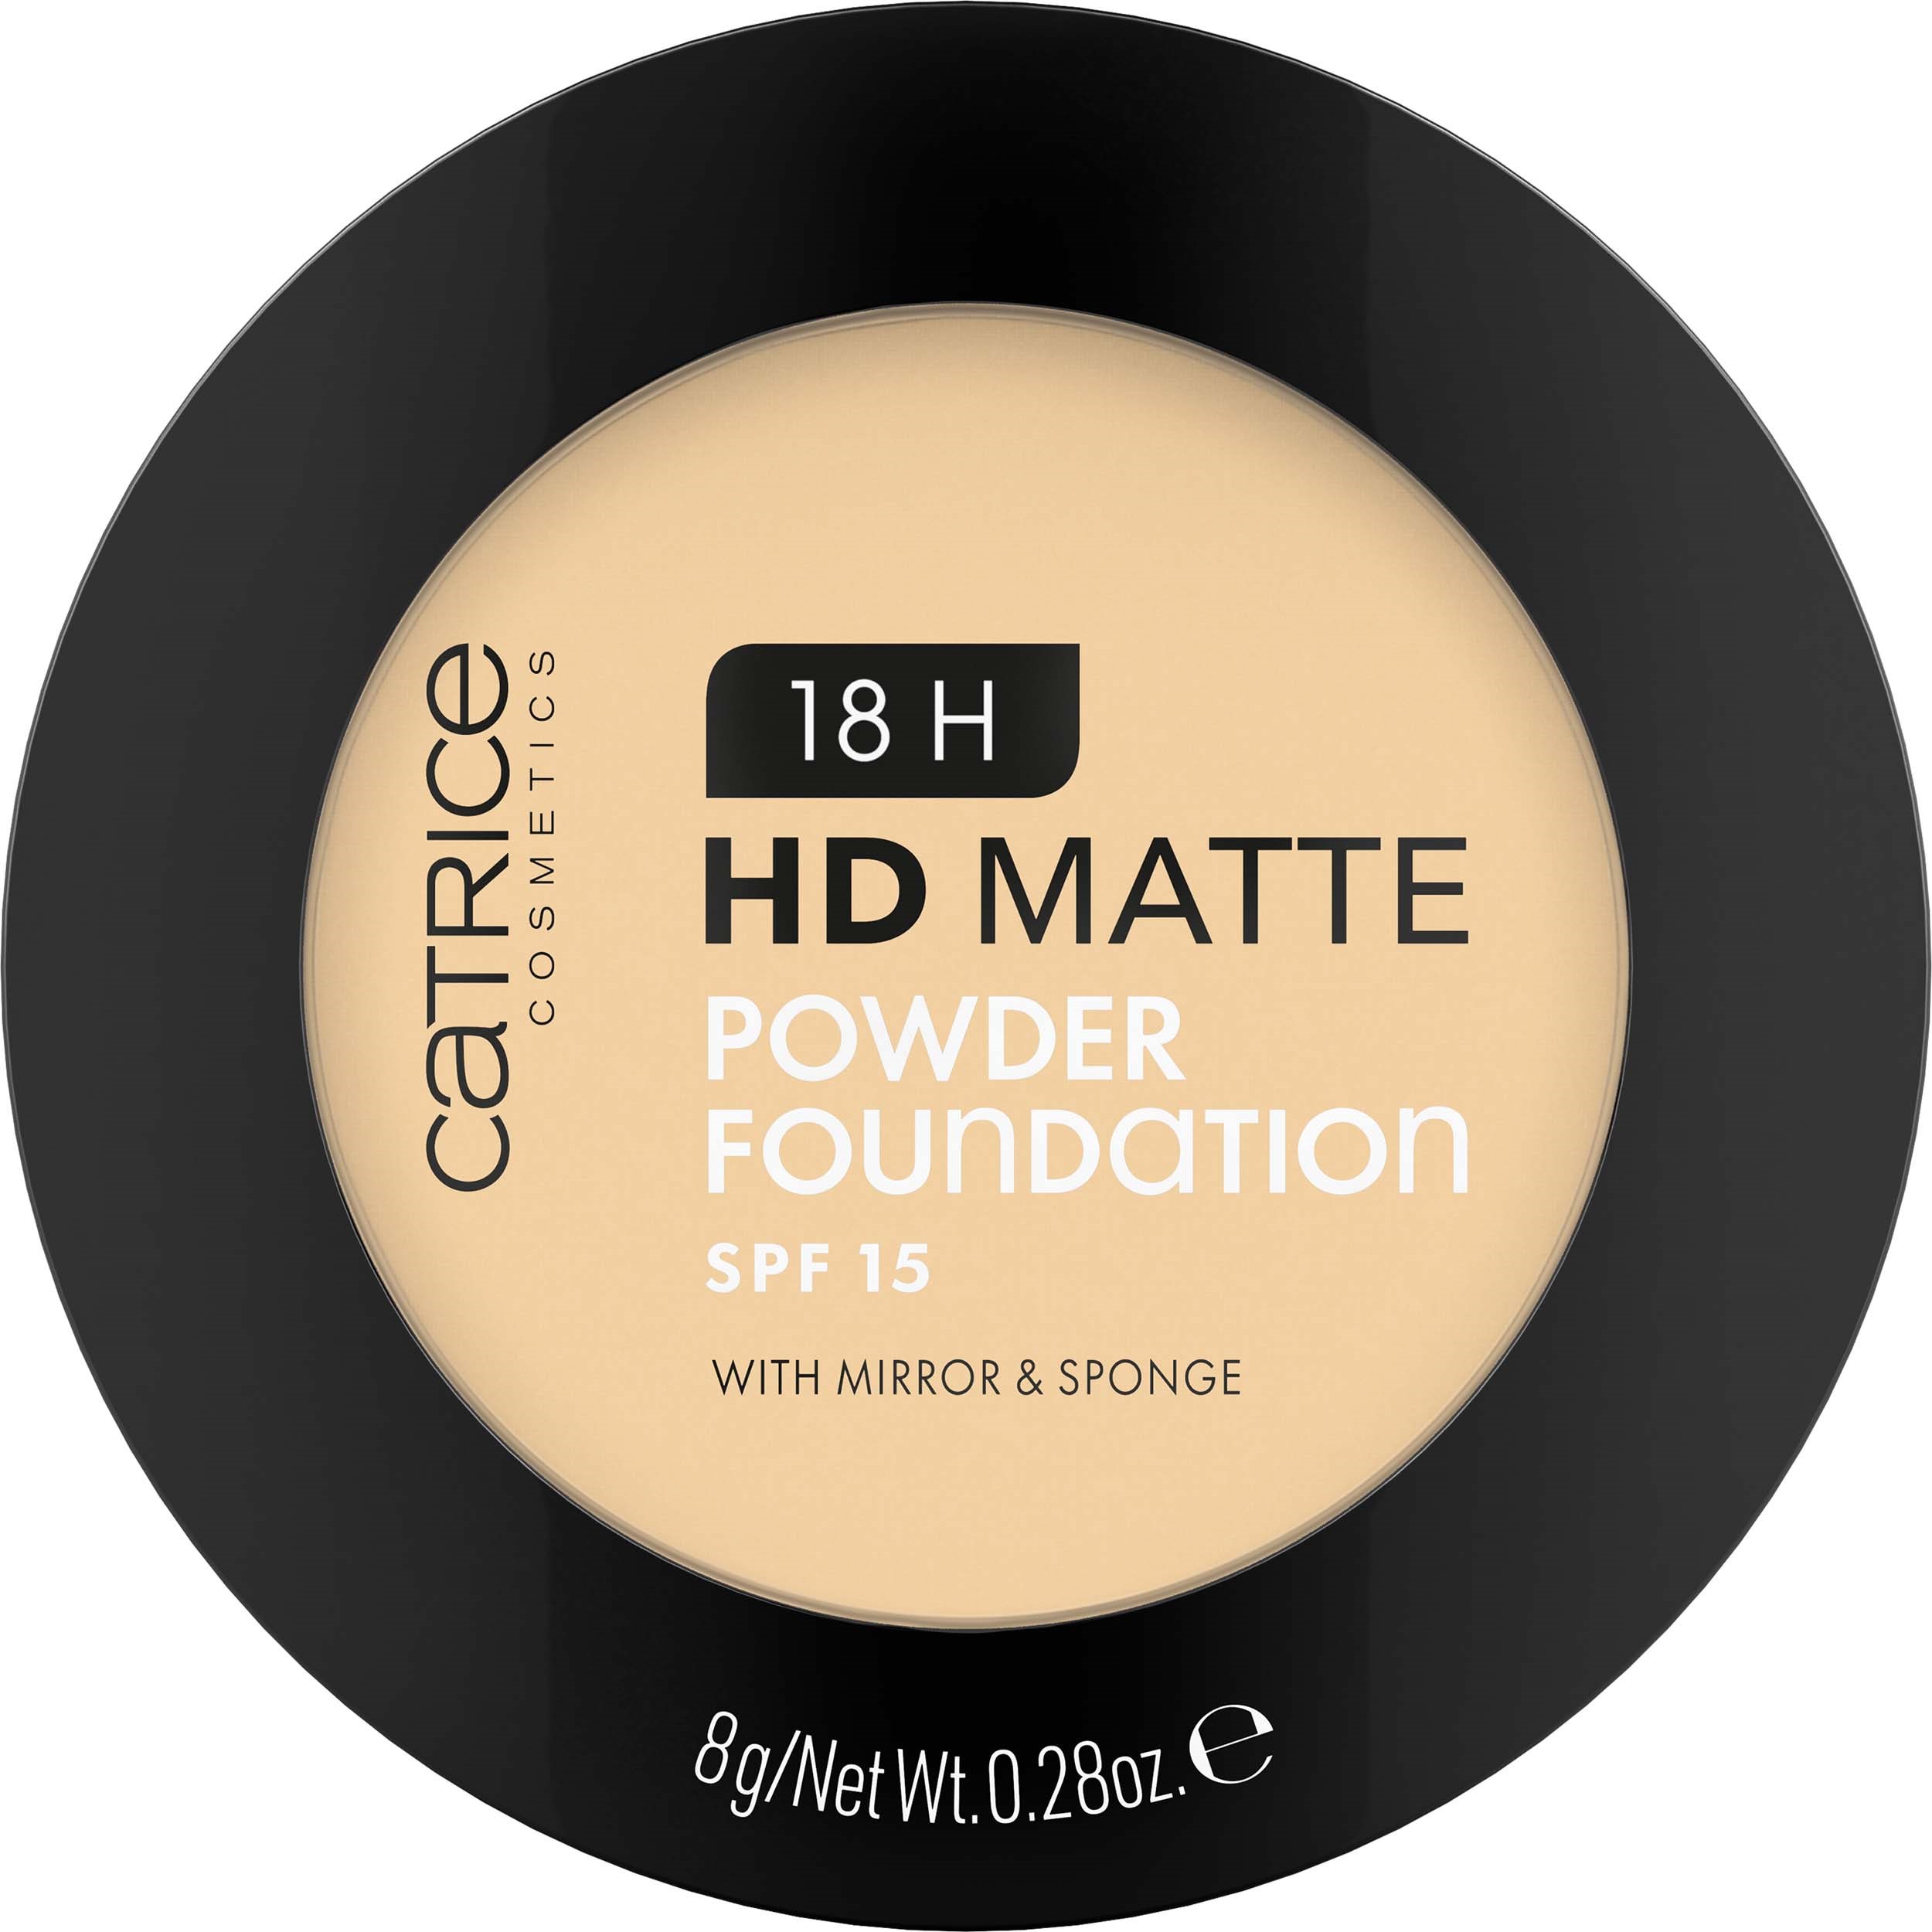 Zdjęcia - Podkład i baza pod makijaż Catrice 18H HD Matte Powder Foundation - podkład do twarzy 